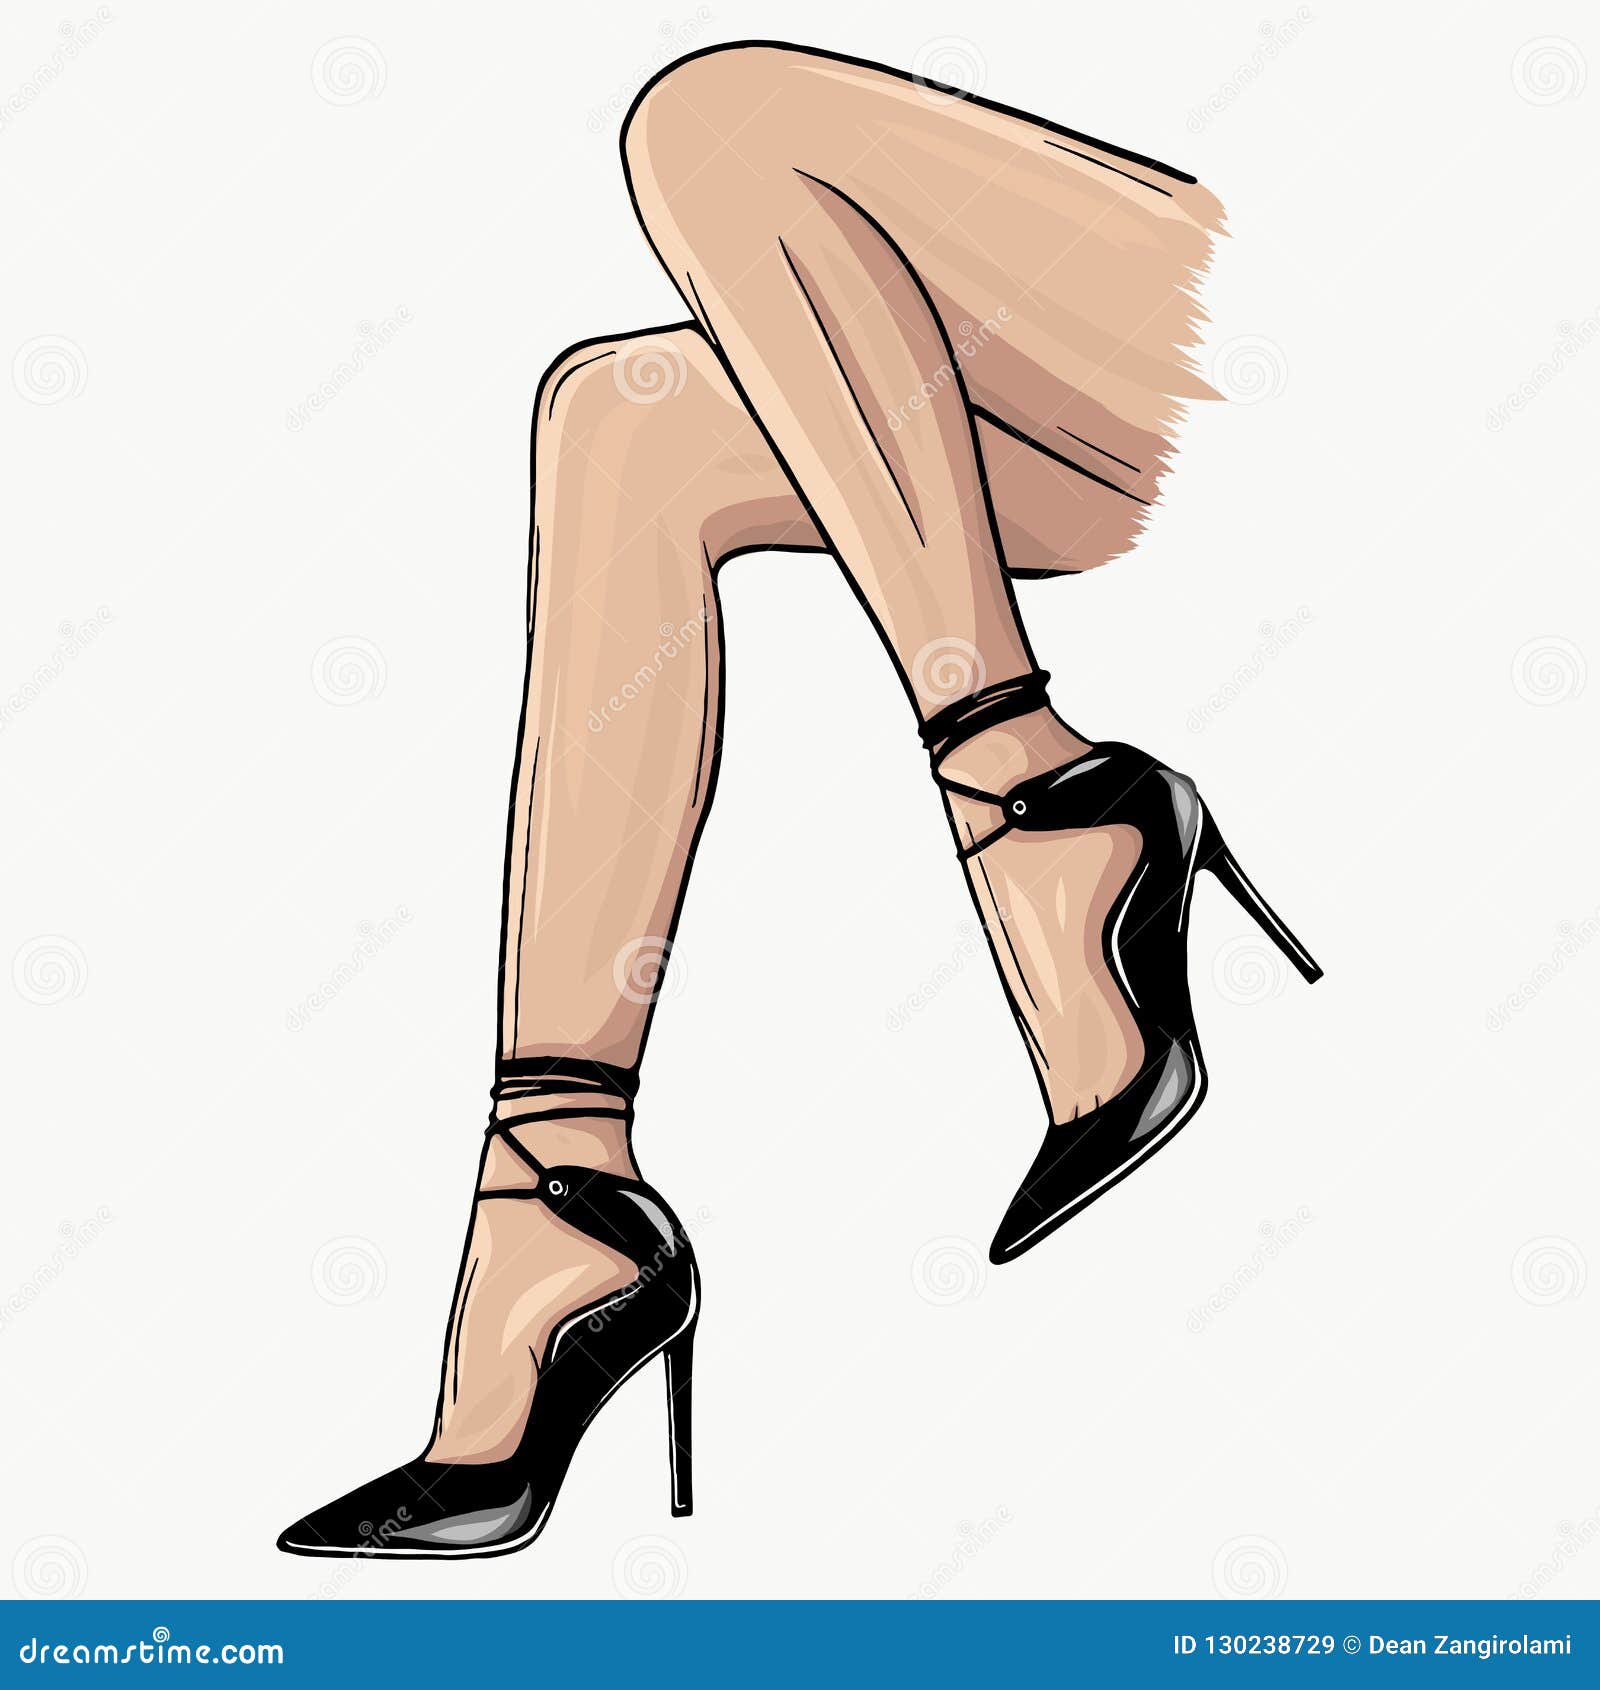 Sandals for Women | Trendy Women's Dress Sandals, Heels, and Slides - Lulus  | Heels, Lace up heels, Trendy high heels